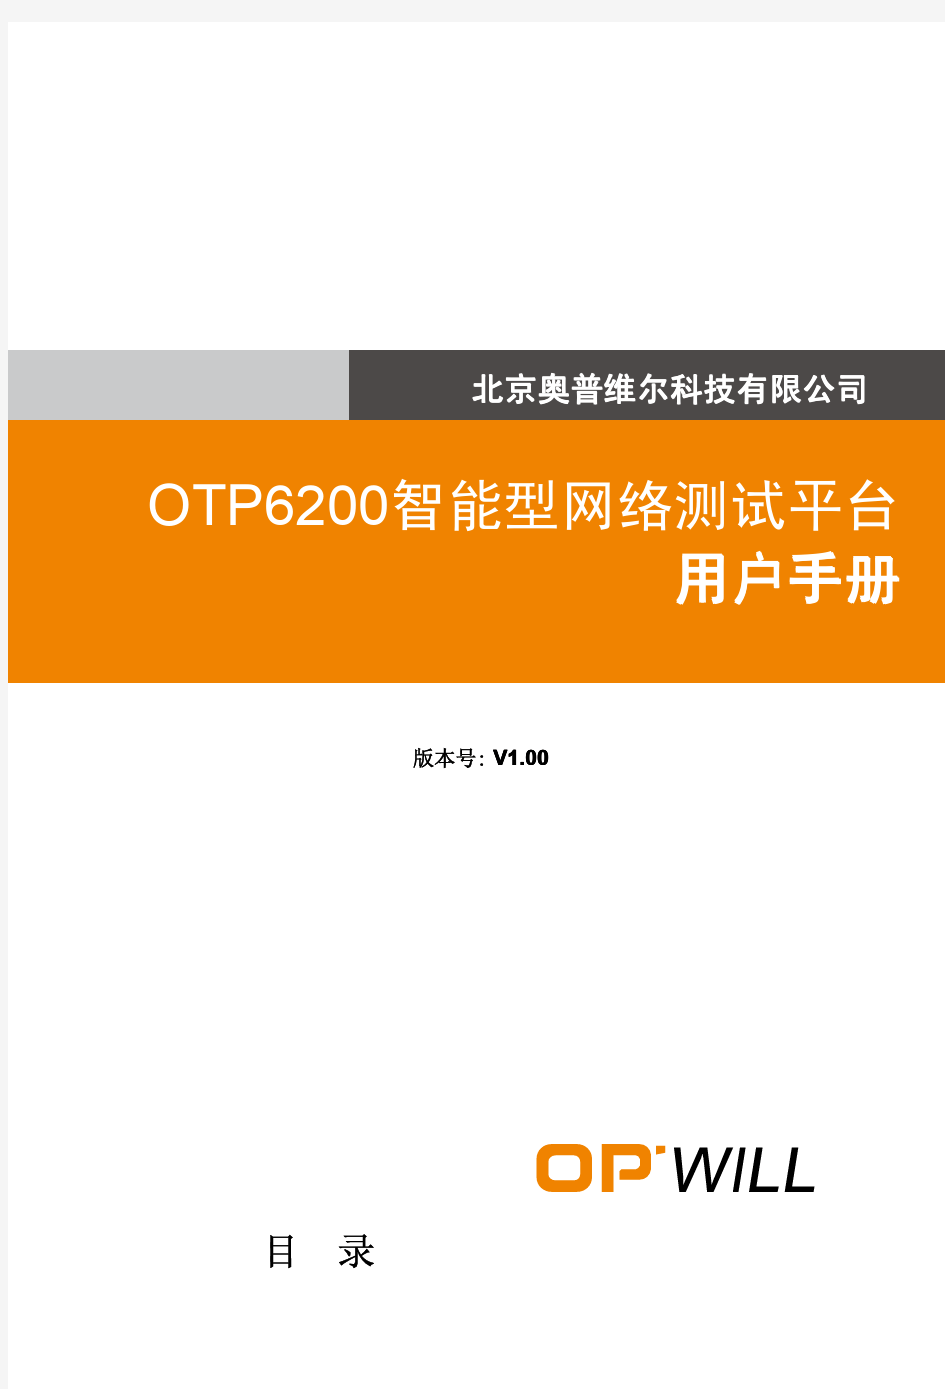 OTP6200用户手册V1.00